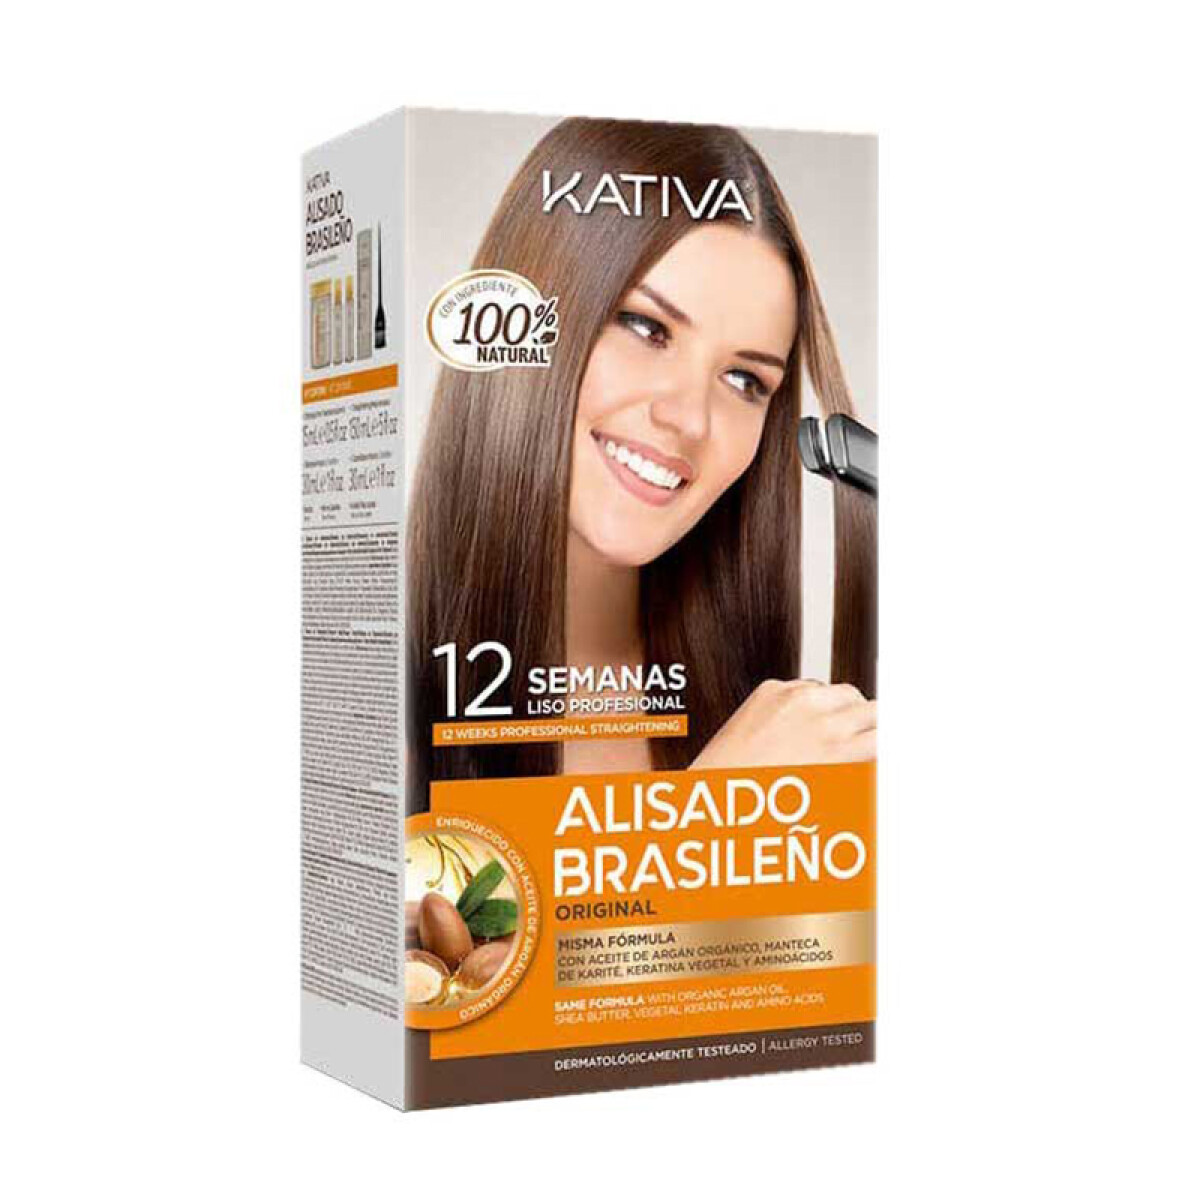 Kativa Alisado Brasileño KIT 